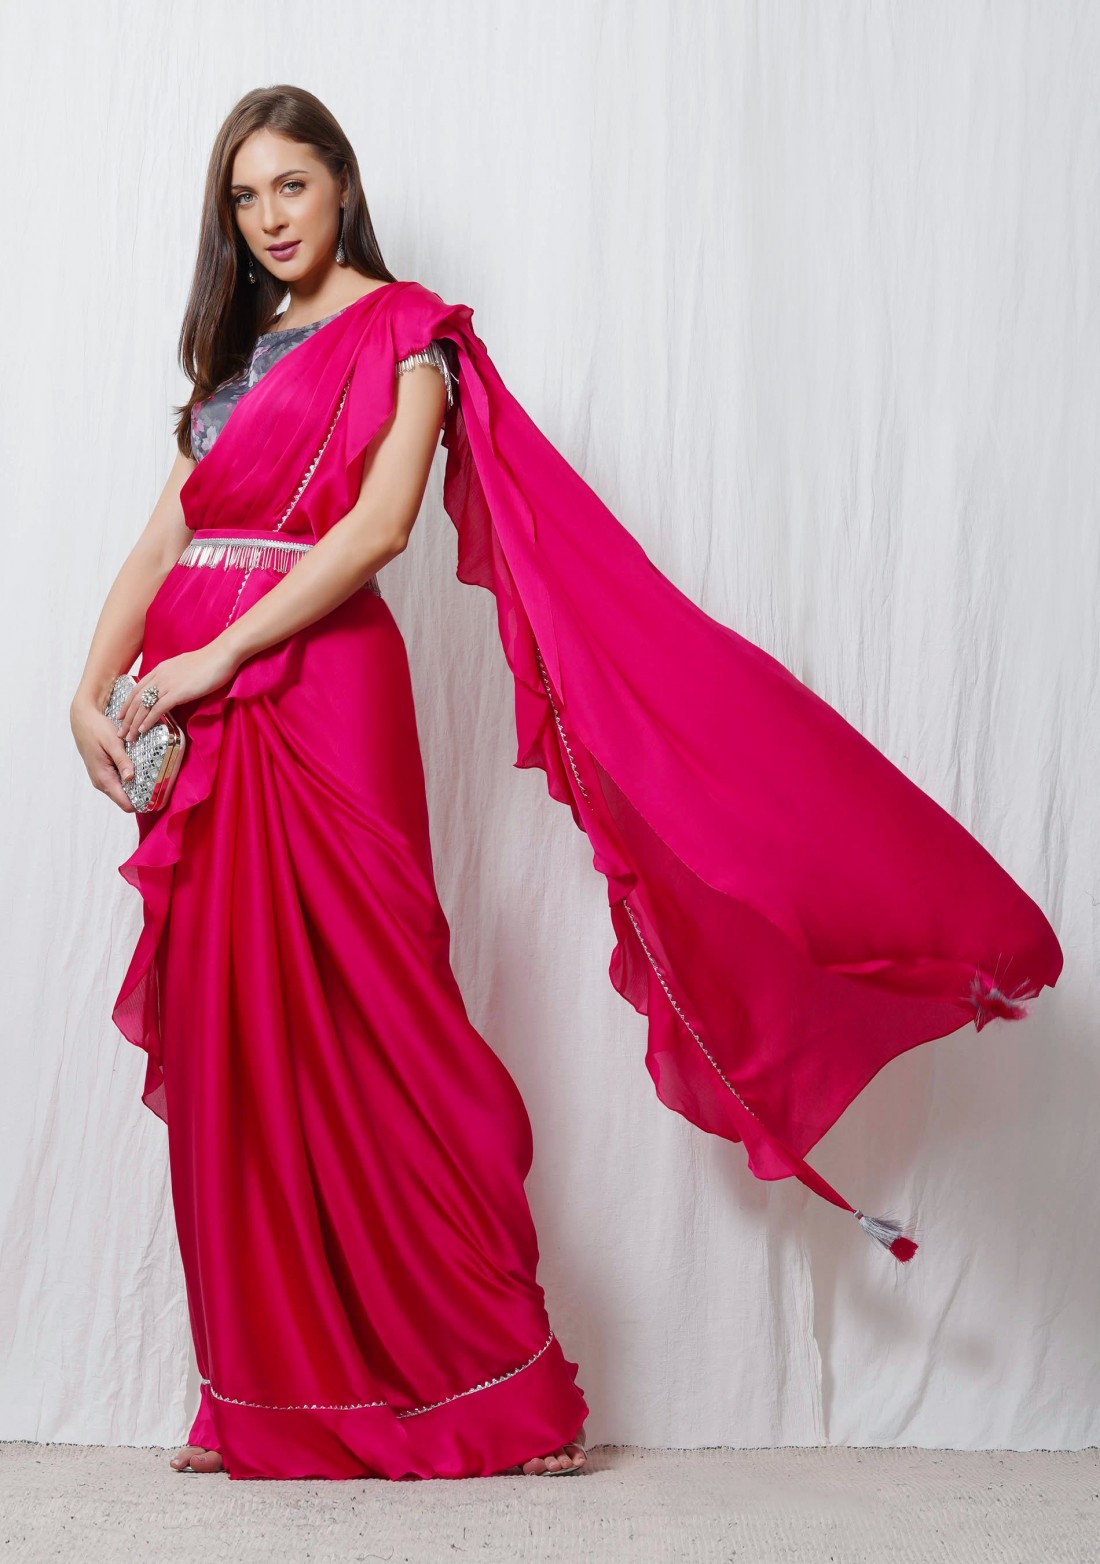 Hot Pink Satin Chiffon Ruffle Saree With Organza Printed Blouse - Buy ...